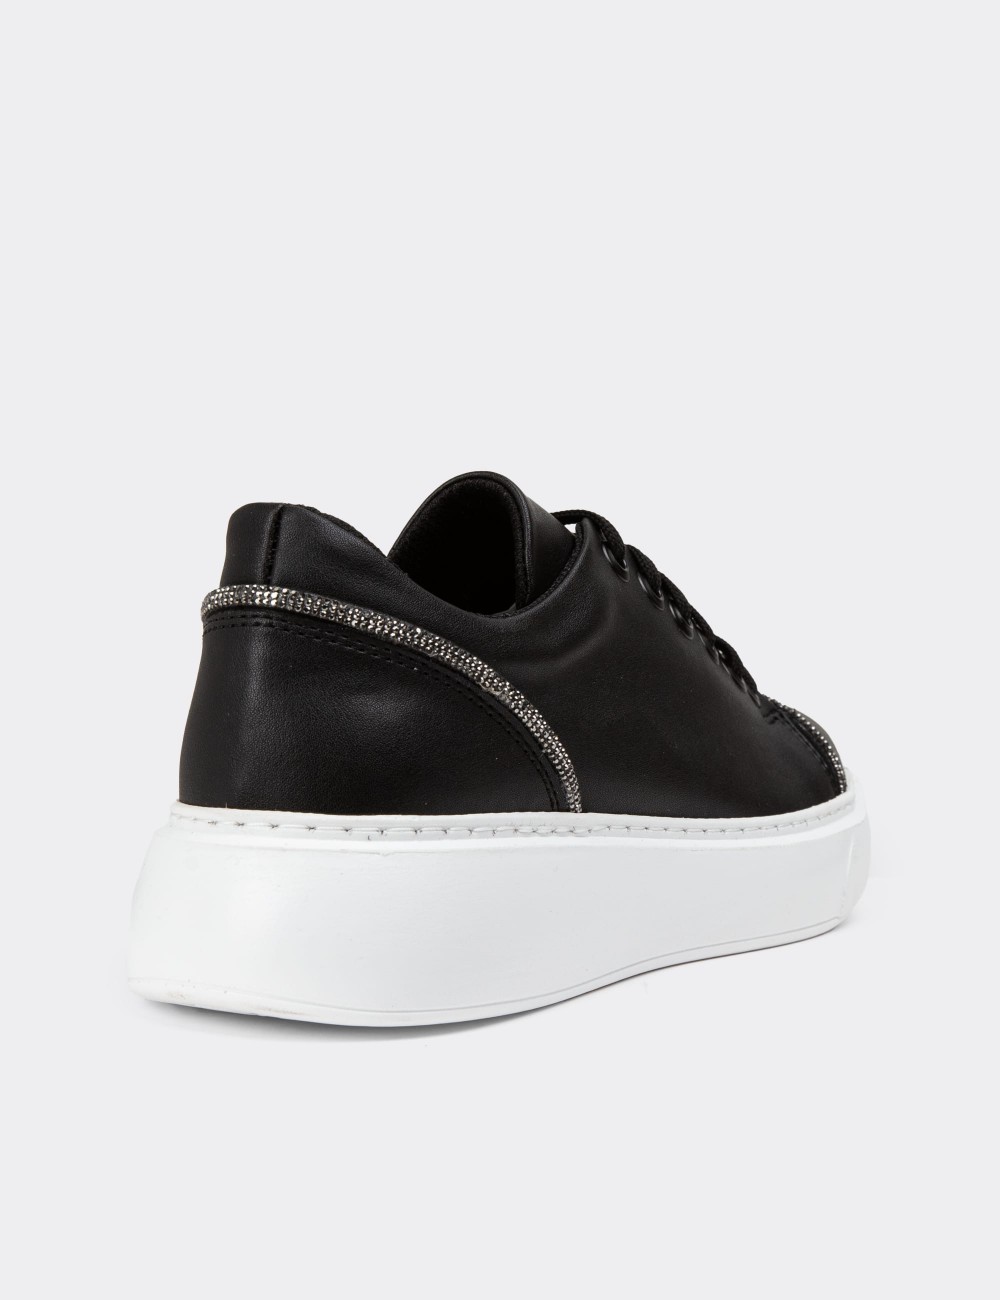 Black Sneakers - CE493ZSYHP01